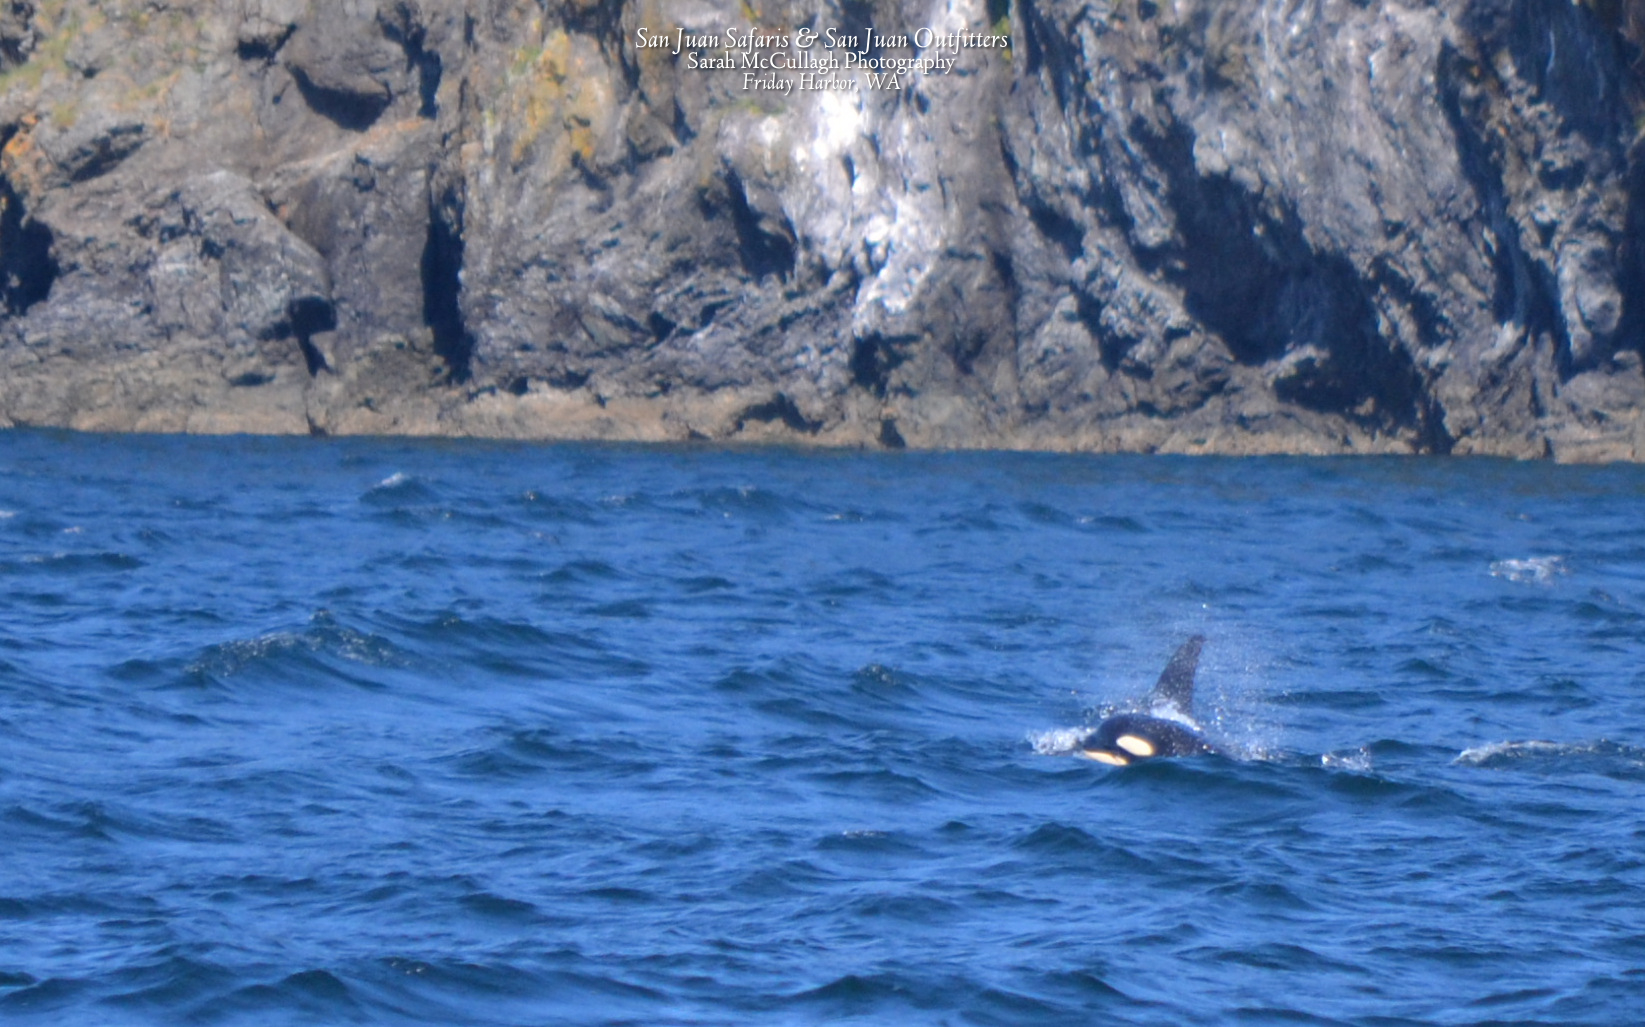 Orcas of J-pod play near San Juan Island